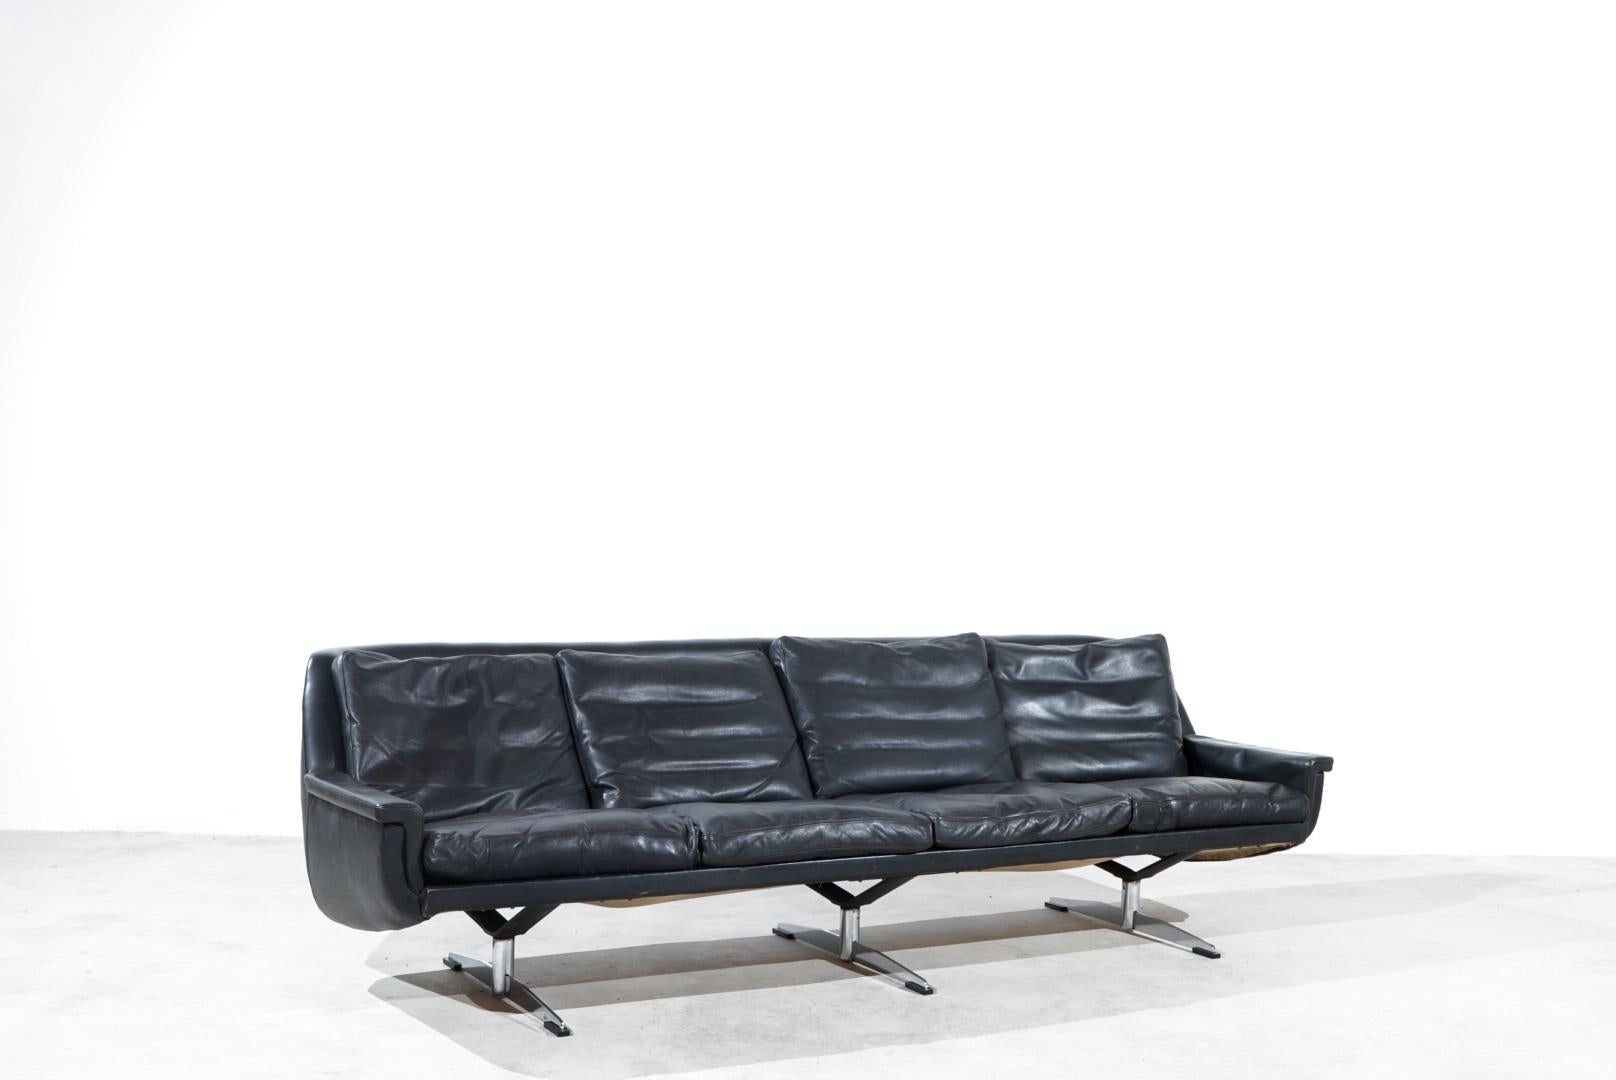 ESA Moebelwerk Danemark Modèle 802 sofa. 

Le design est celui de Werner Langenfeld dans les années 1960.

Ce canapé a été produit au Danemark et est fabriqué en cuir aniline noir lisse.

Modèle rare avec une base pivotante unique en acier